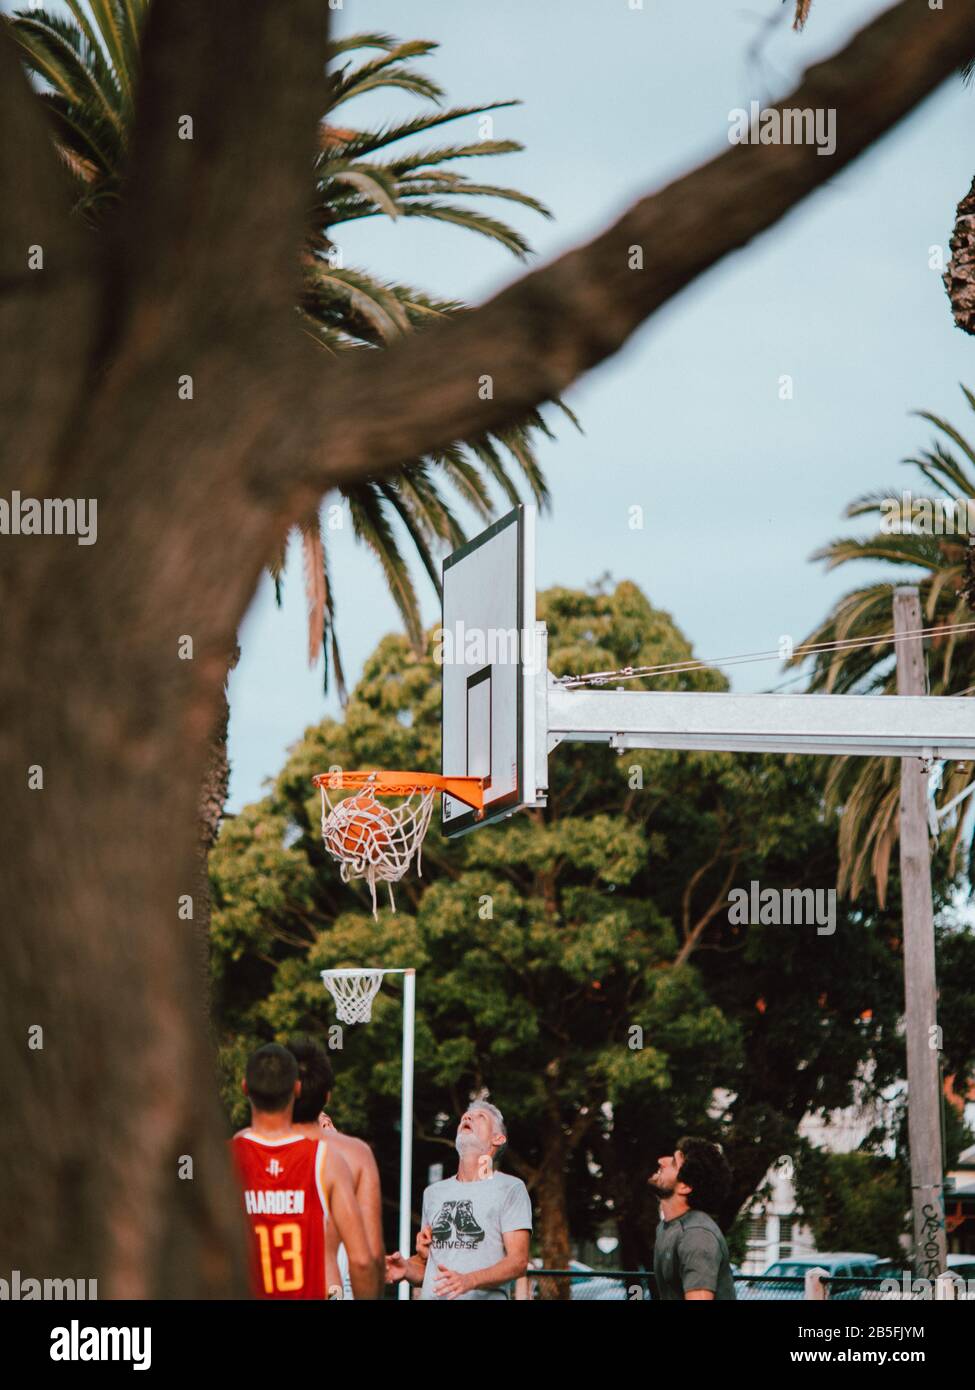 Certains habitants australiens jouent au basket-ball, entourés de palmiers en Australie Banque D'Images